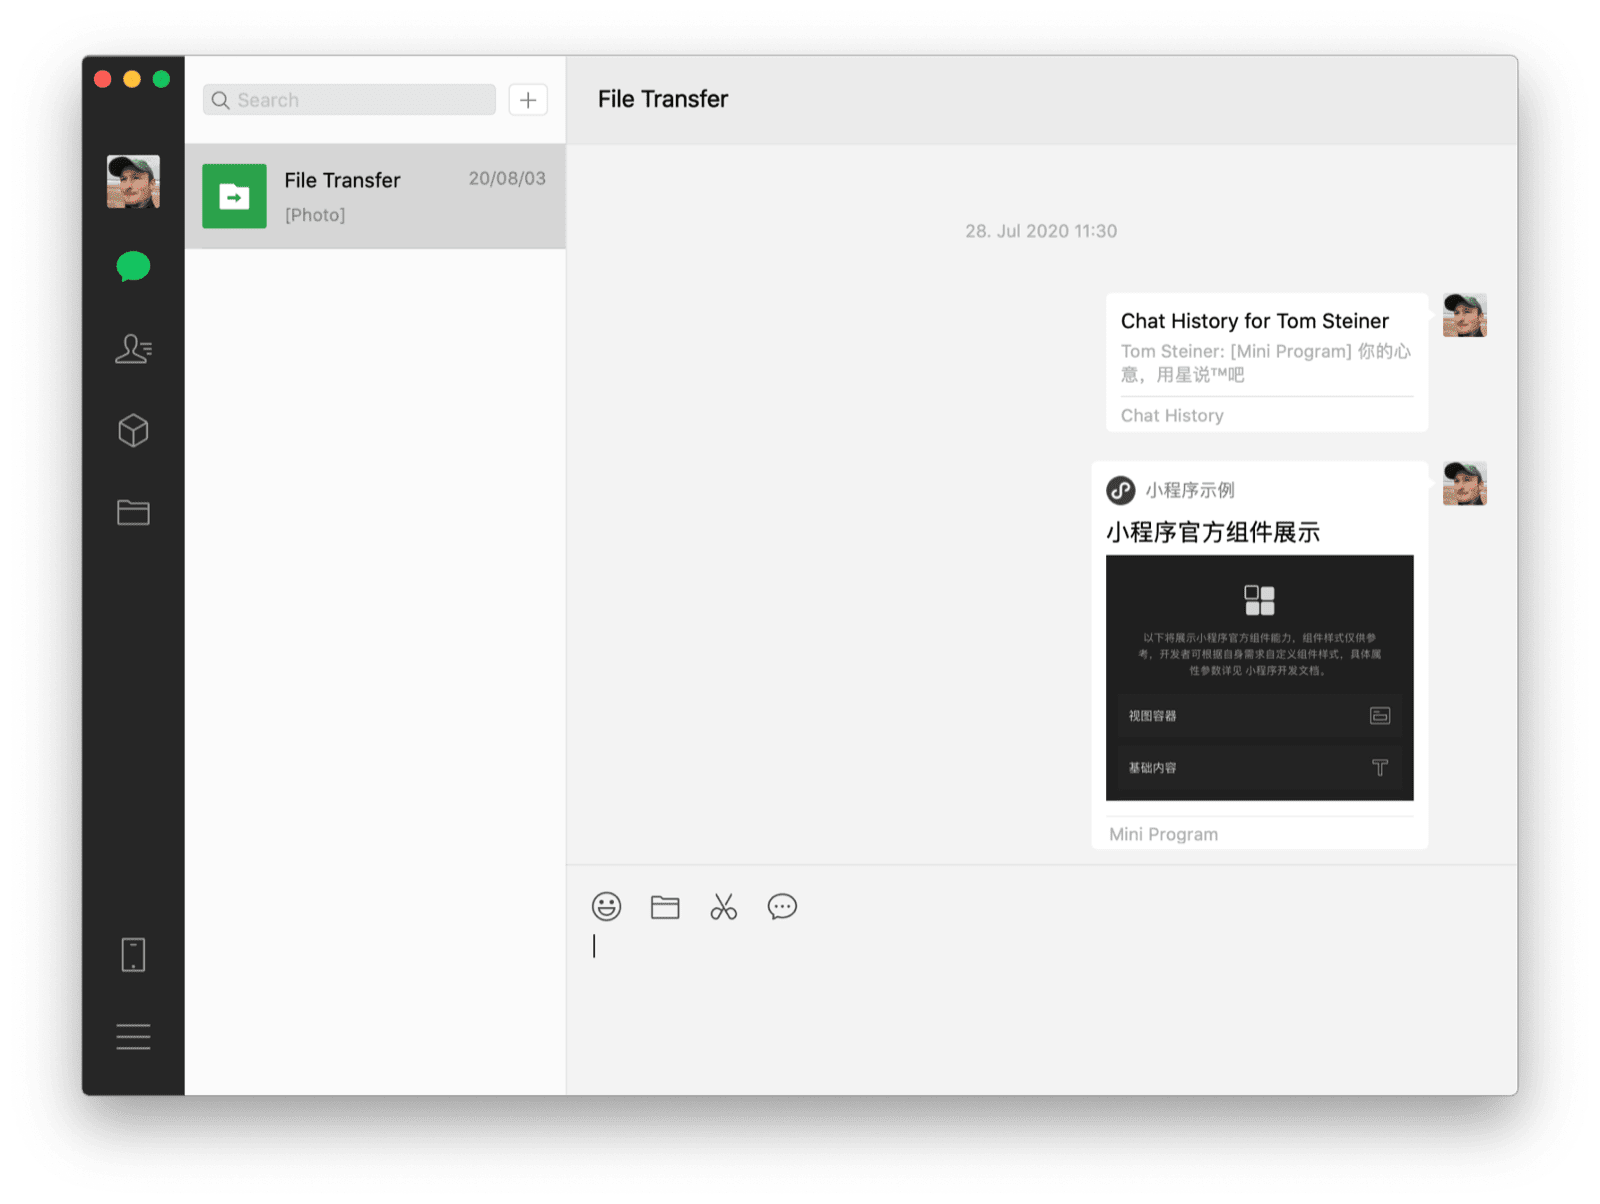 Il client desktop WeChat per macOS che mostra una chat con se stessi con una mini app condivisa e una cronologia chat come i due messaggi visibili.